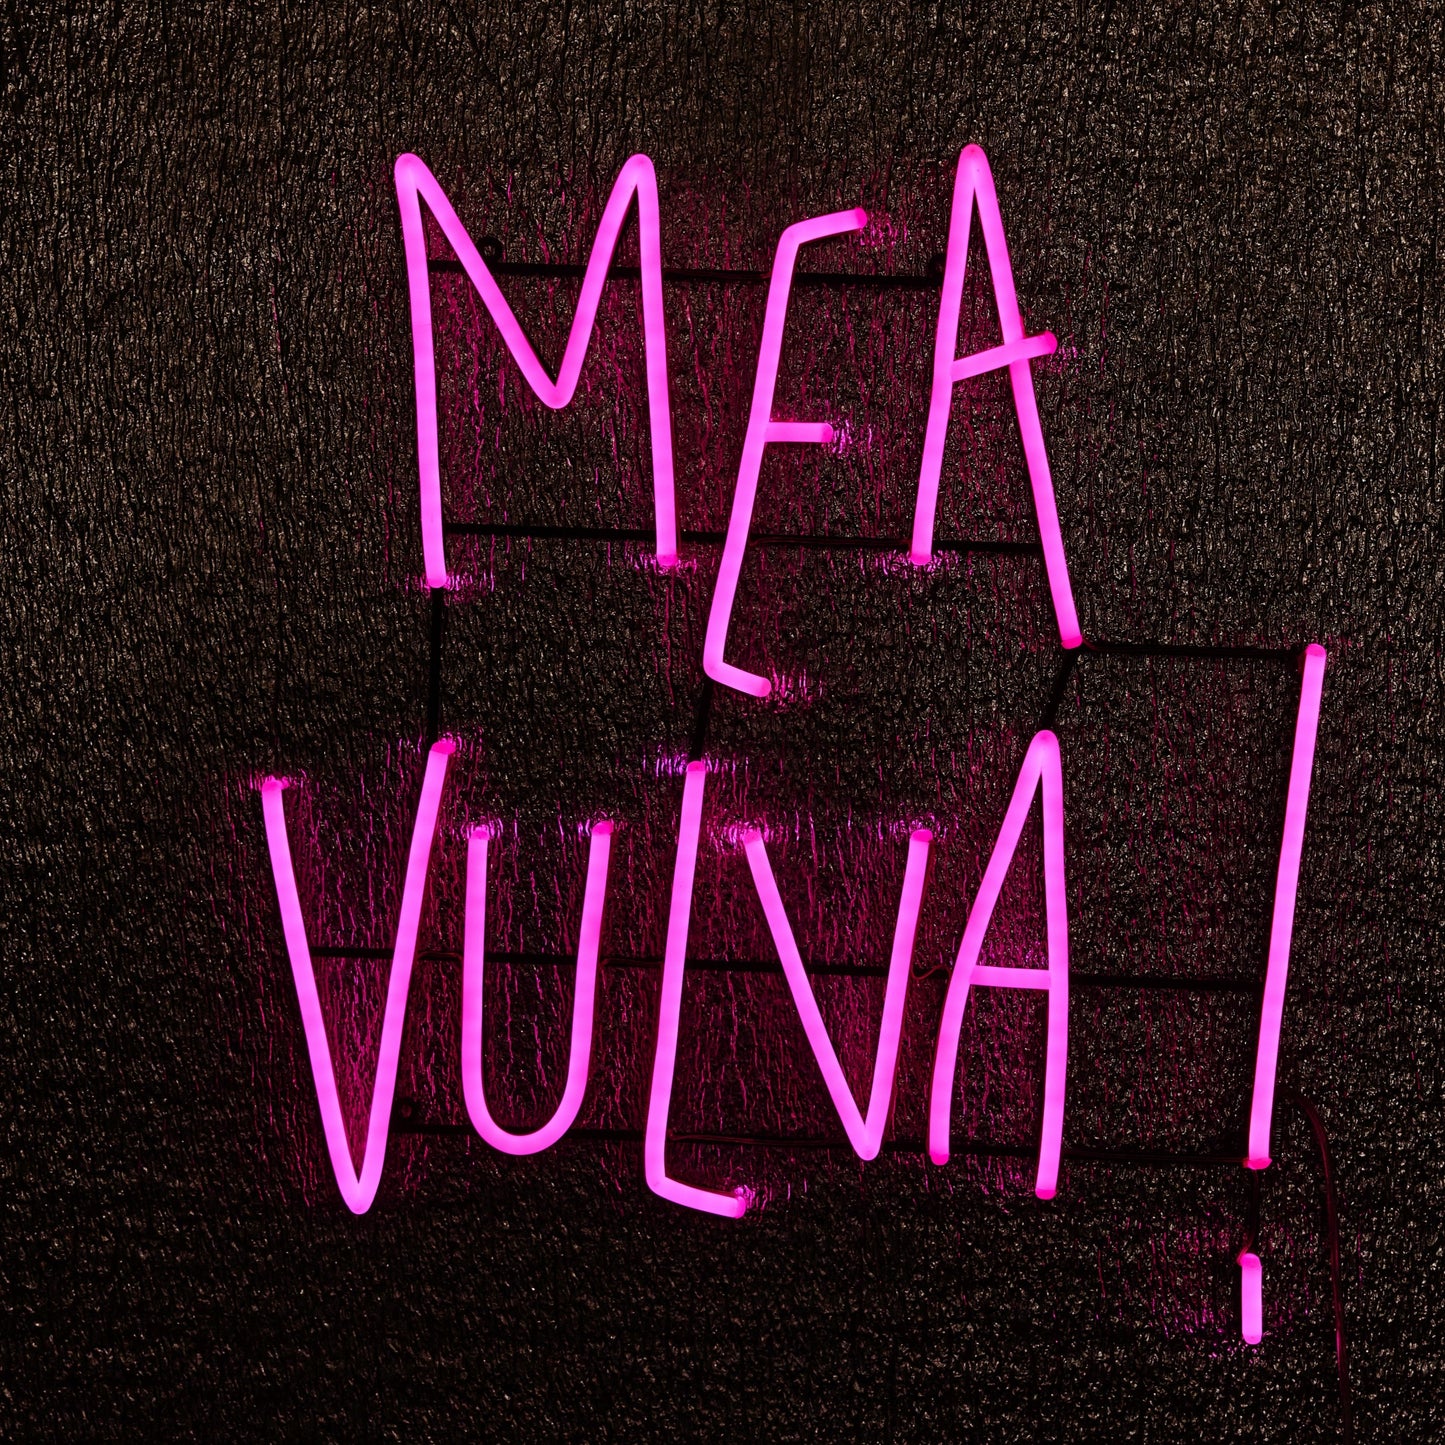 Mea Vulva by Kelly Hortense